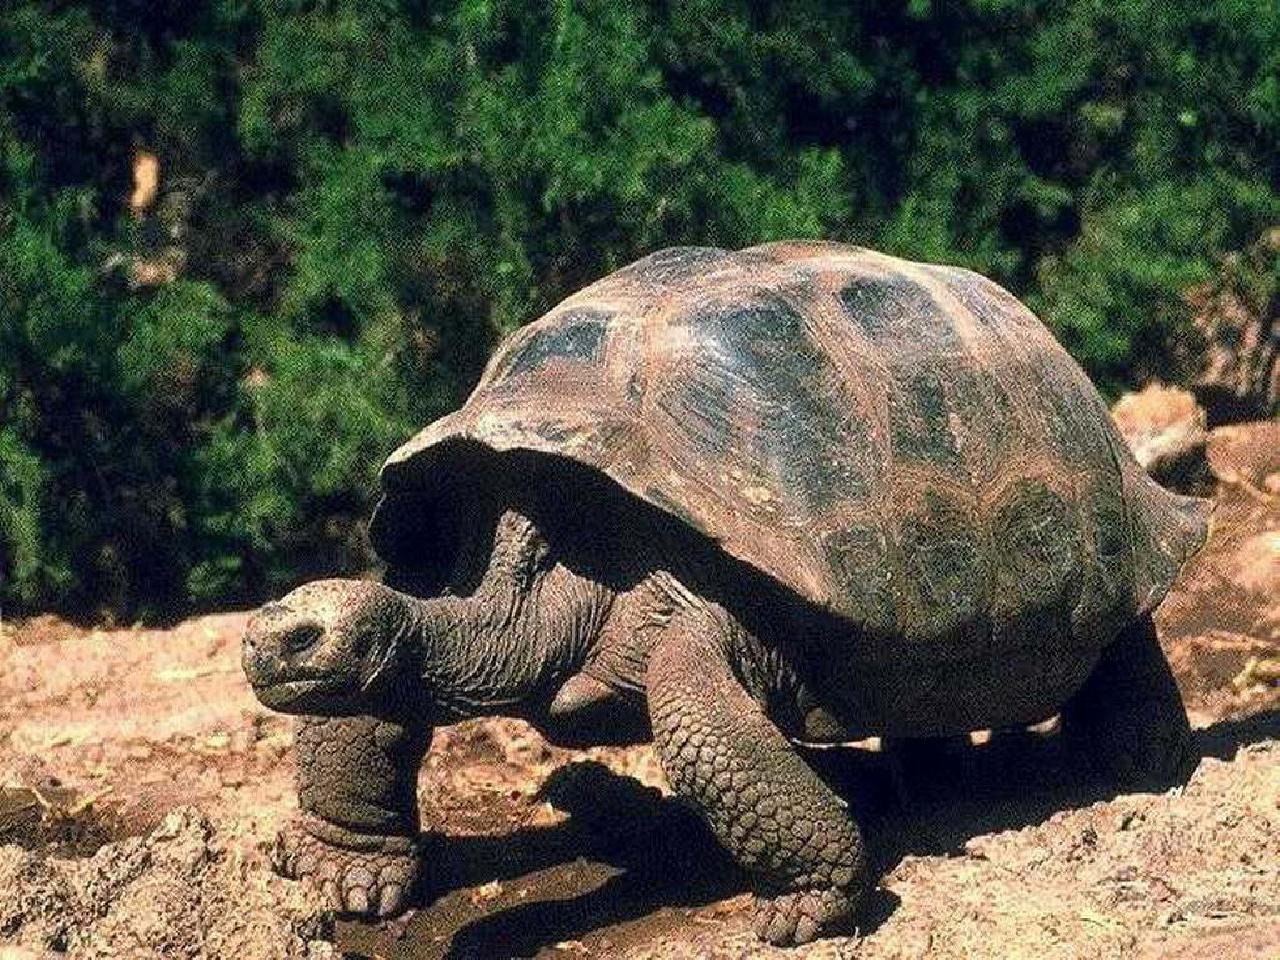 Слоновая черепаха относится к отряду чешуйчатых